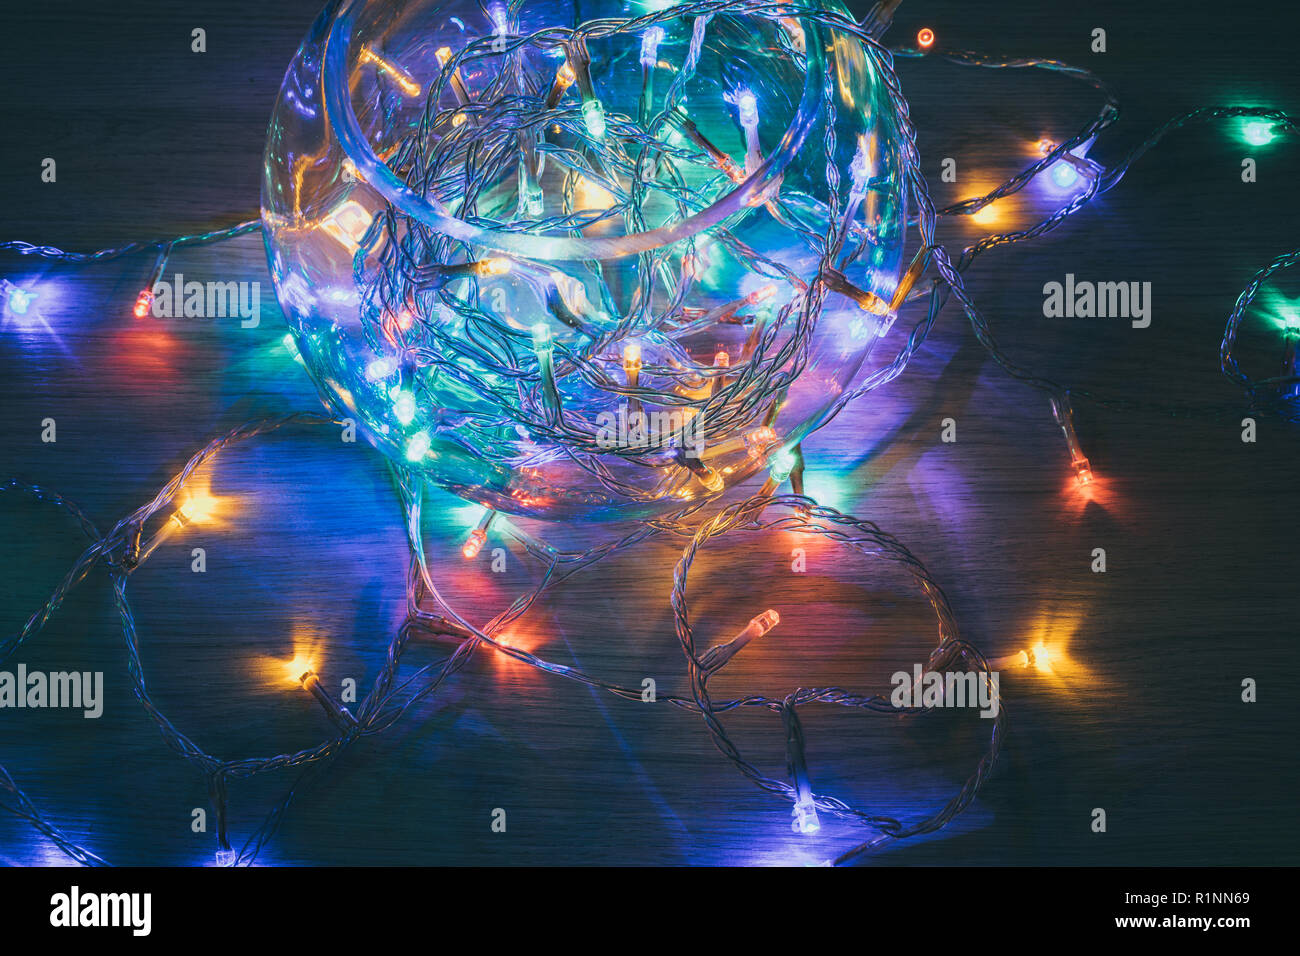 Las luces de navidad dentro de una bola de cristal sobre un fondo de madera. Decoración de Navidad Foto de stock